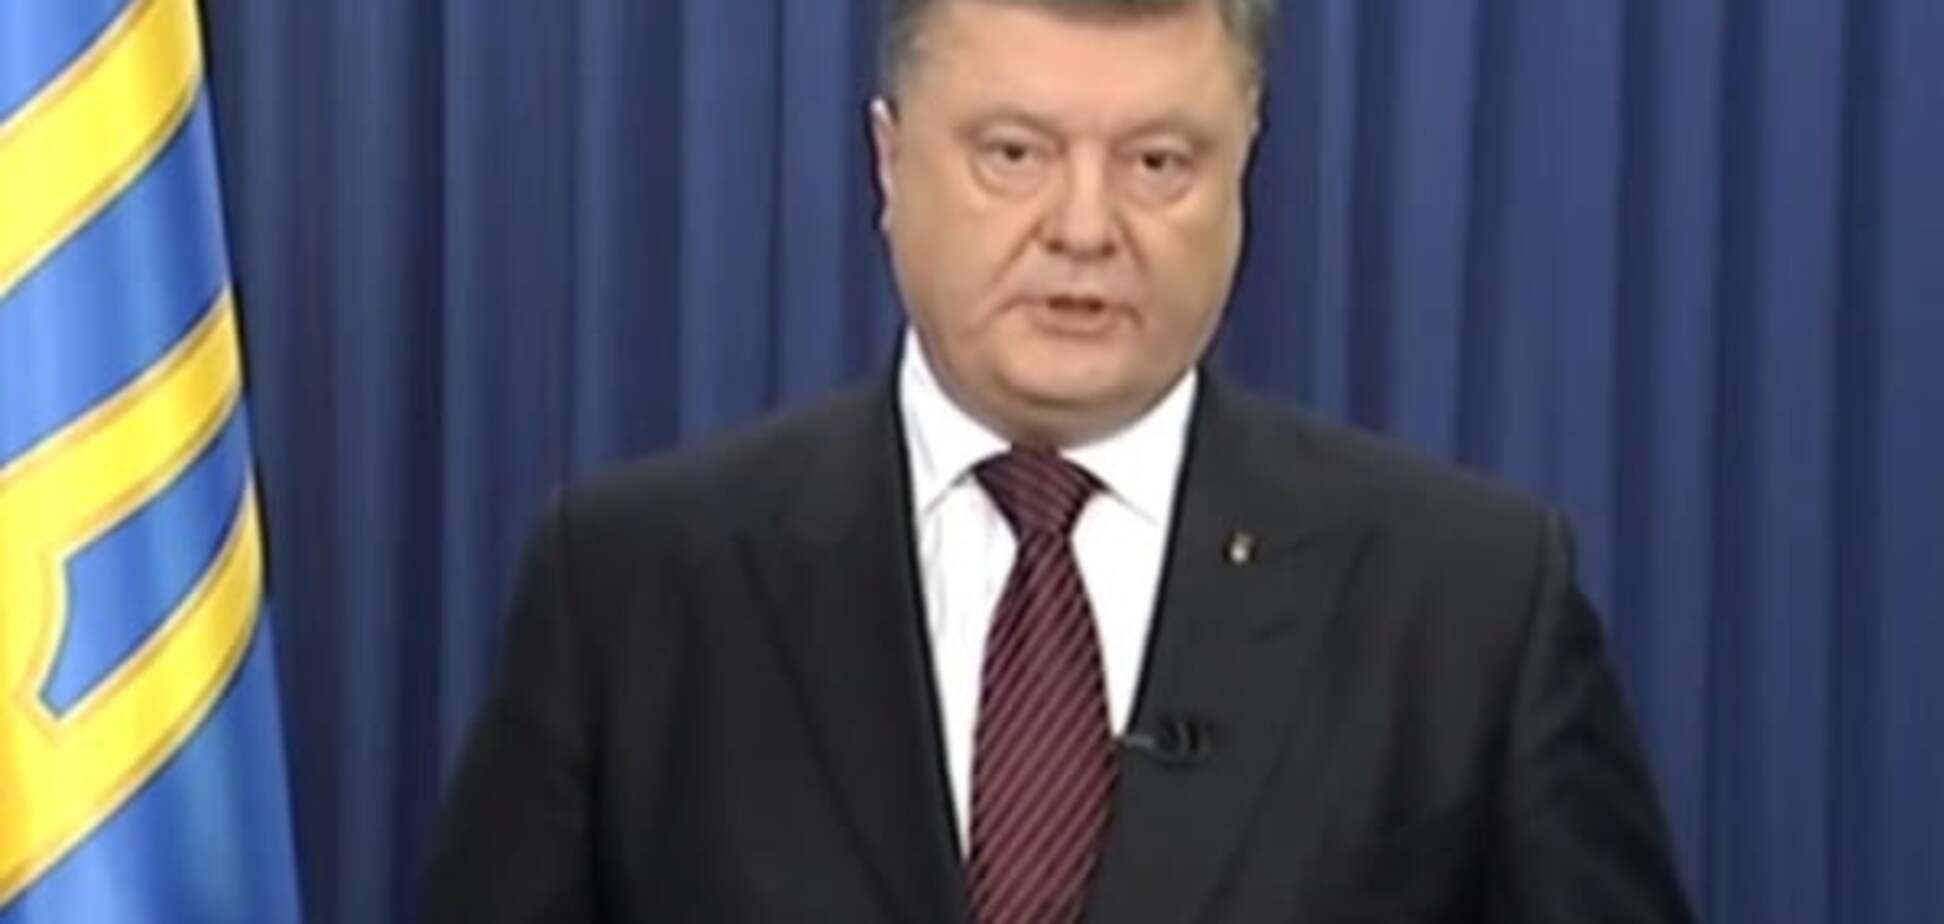 Порошенко: Украина никогда не признает приговора Савченко